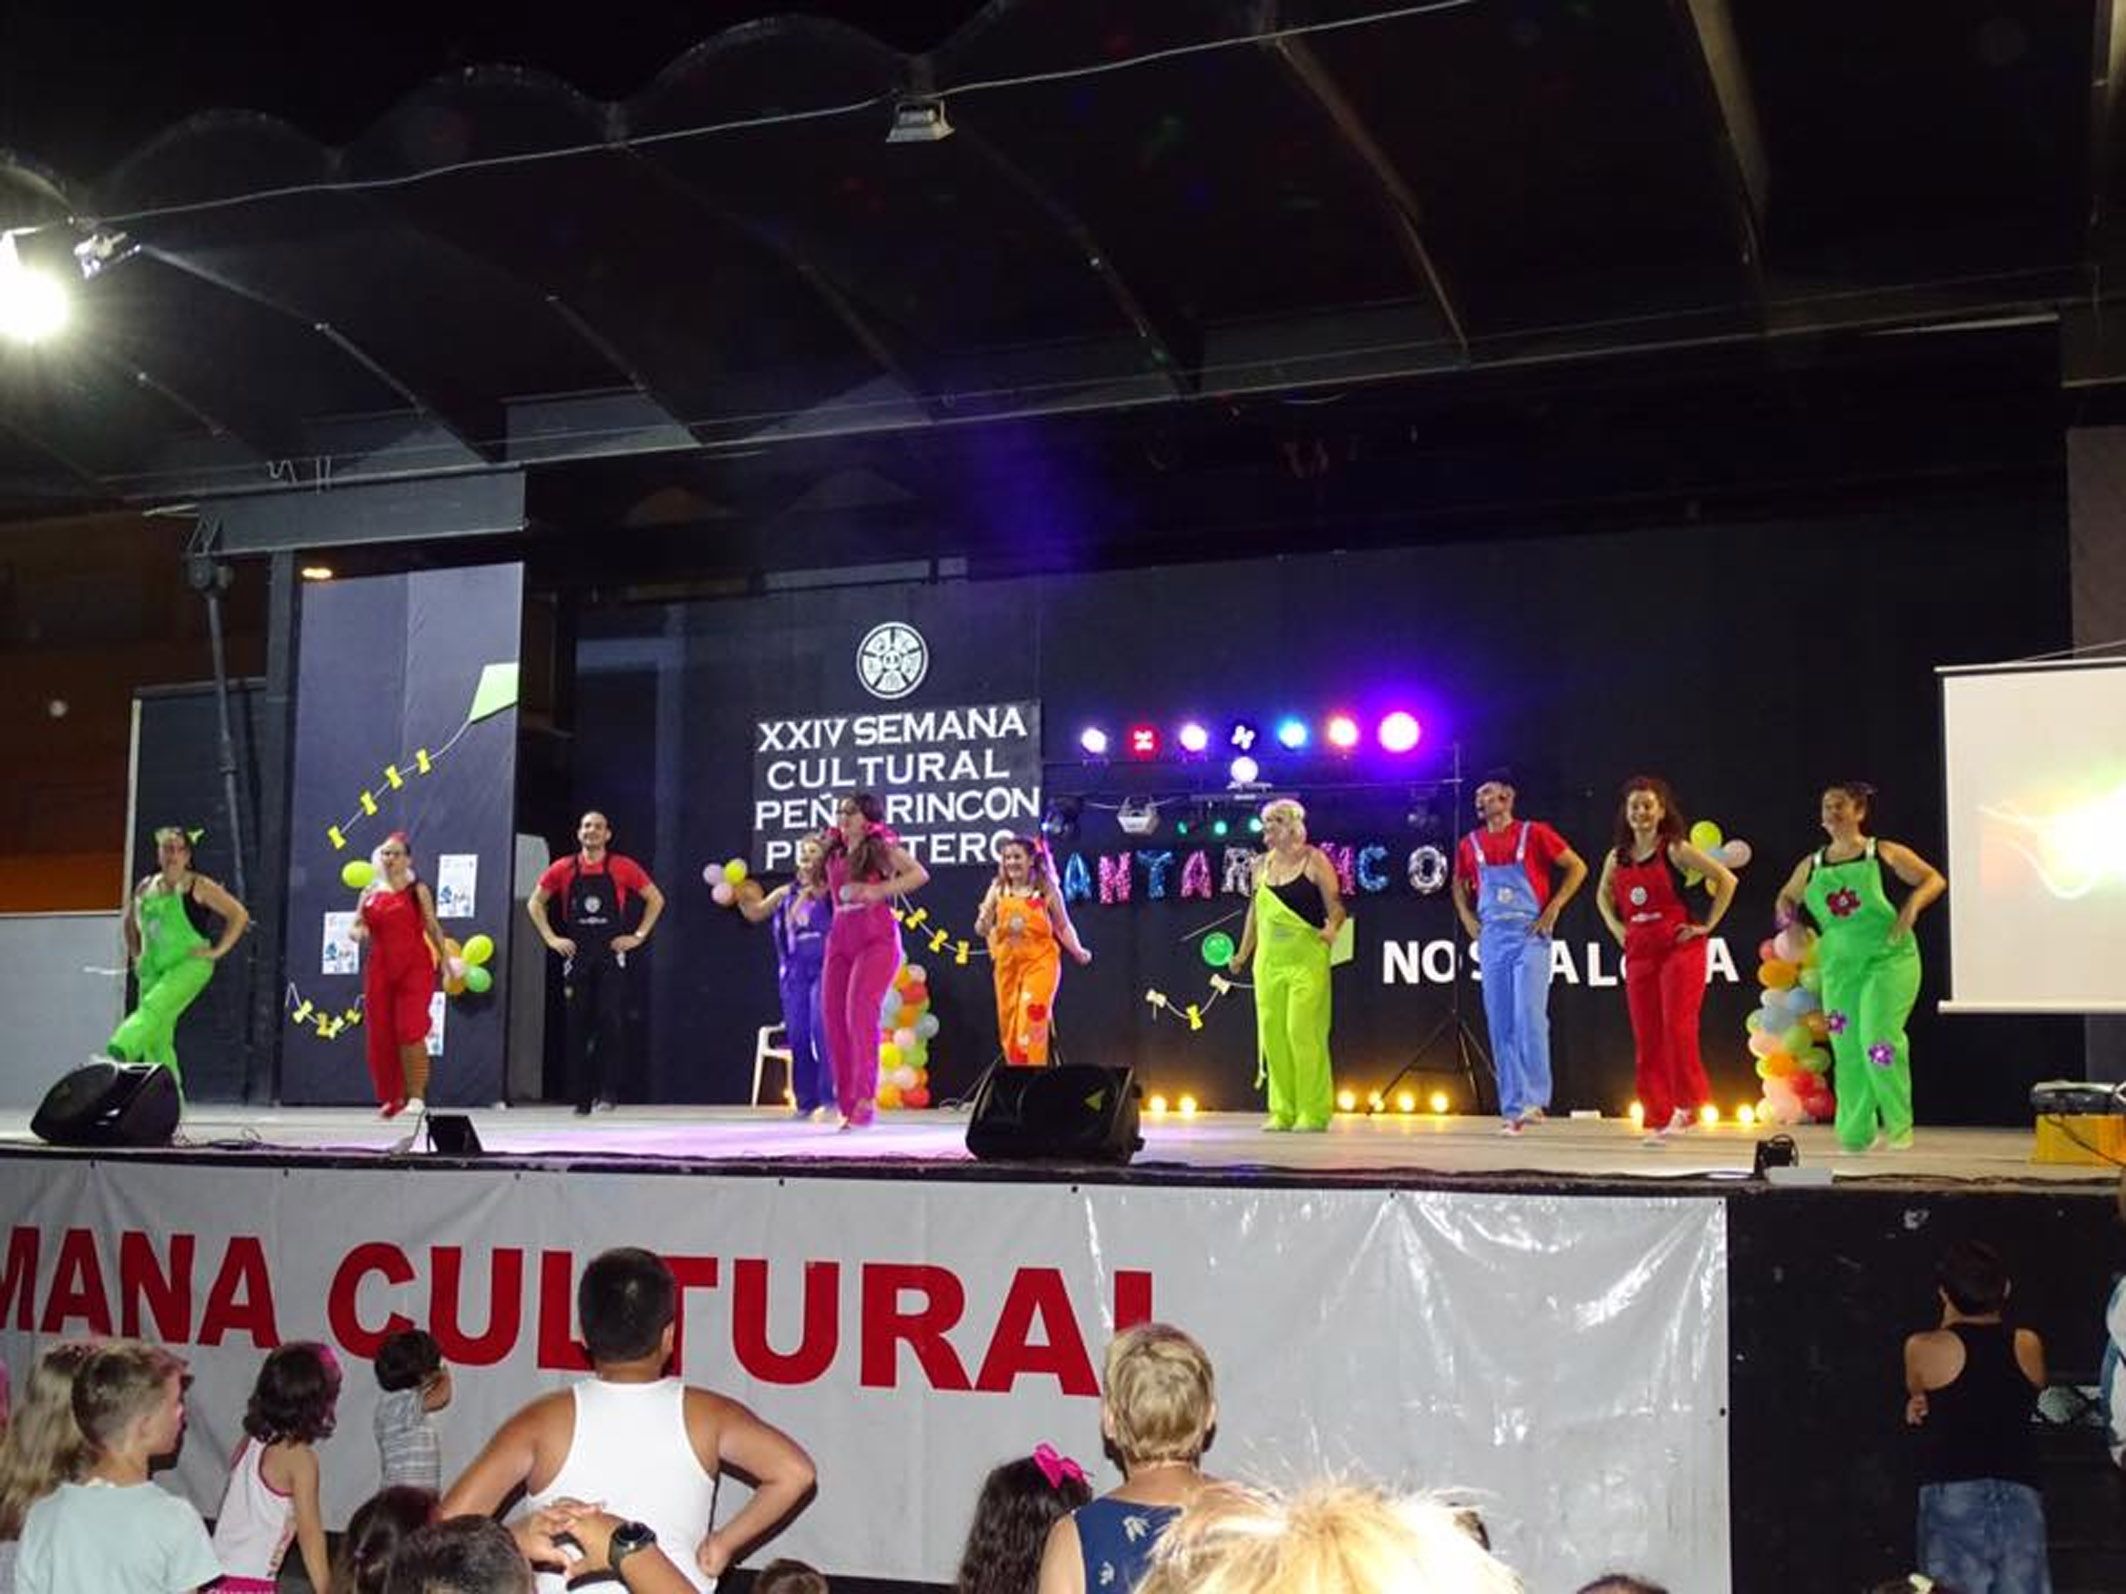 Semana Cultural Rincón Pulpitero - CantaRincón2